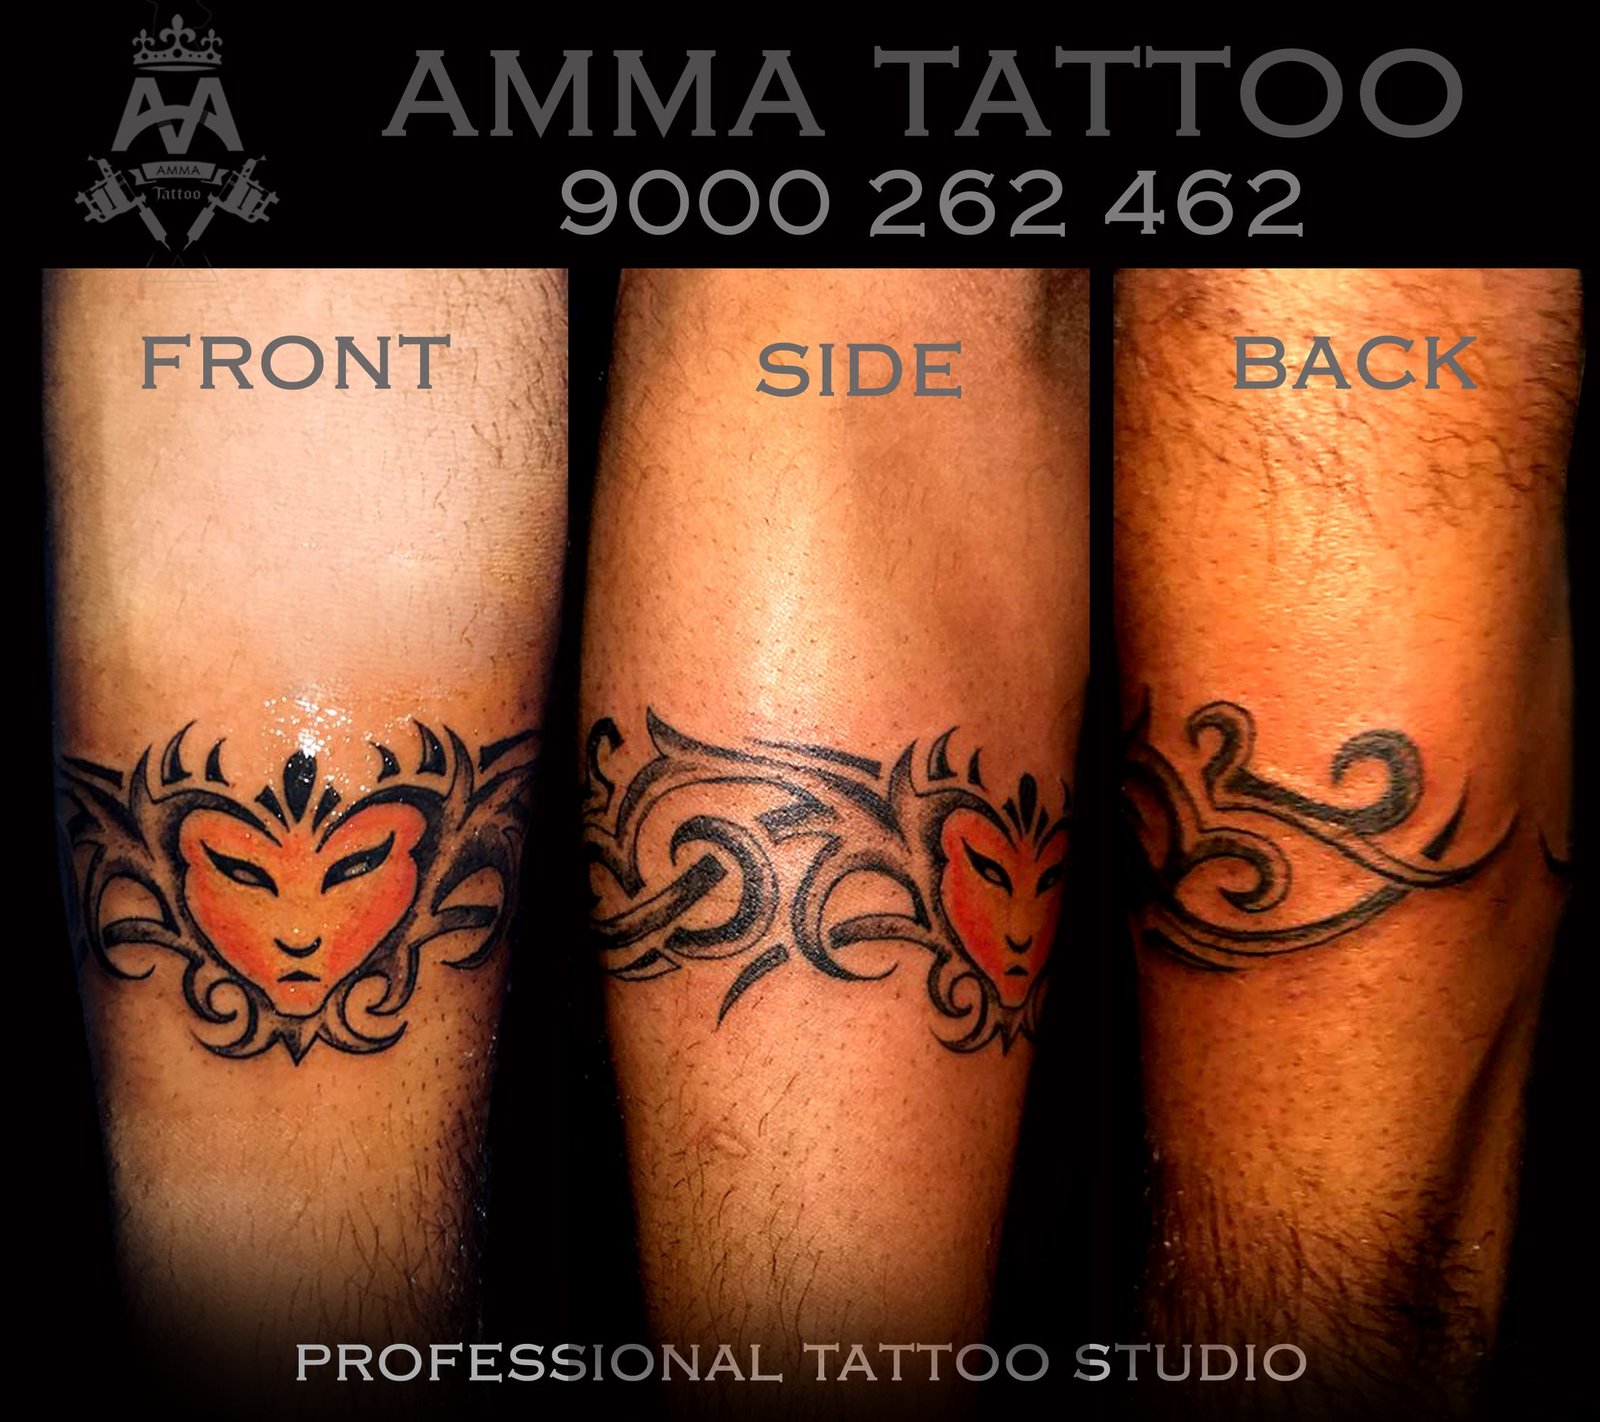 Tattoo | Tattoos | Tattoo Designs | Tattoo Gallery | Tattoo for Girls and  Men | Best tattoo Designs. | Best tattoo designs, Tattoo designs, Tattoos  gallery